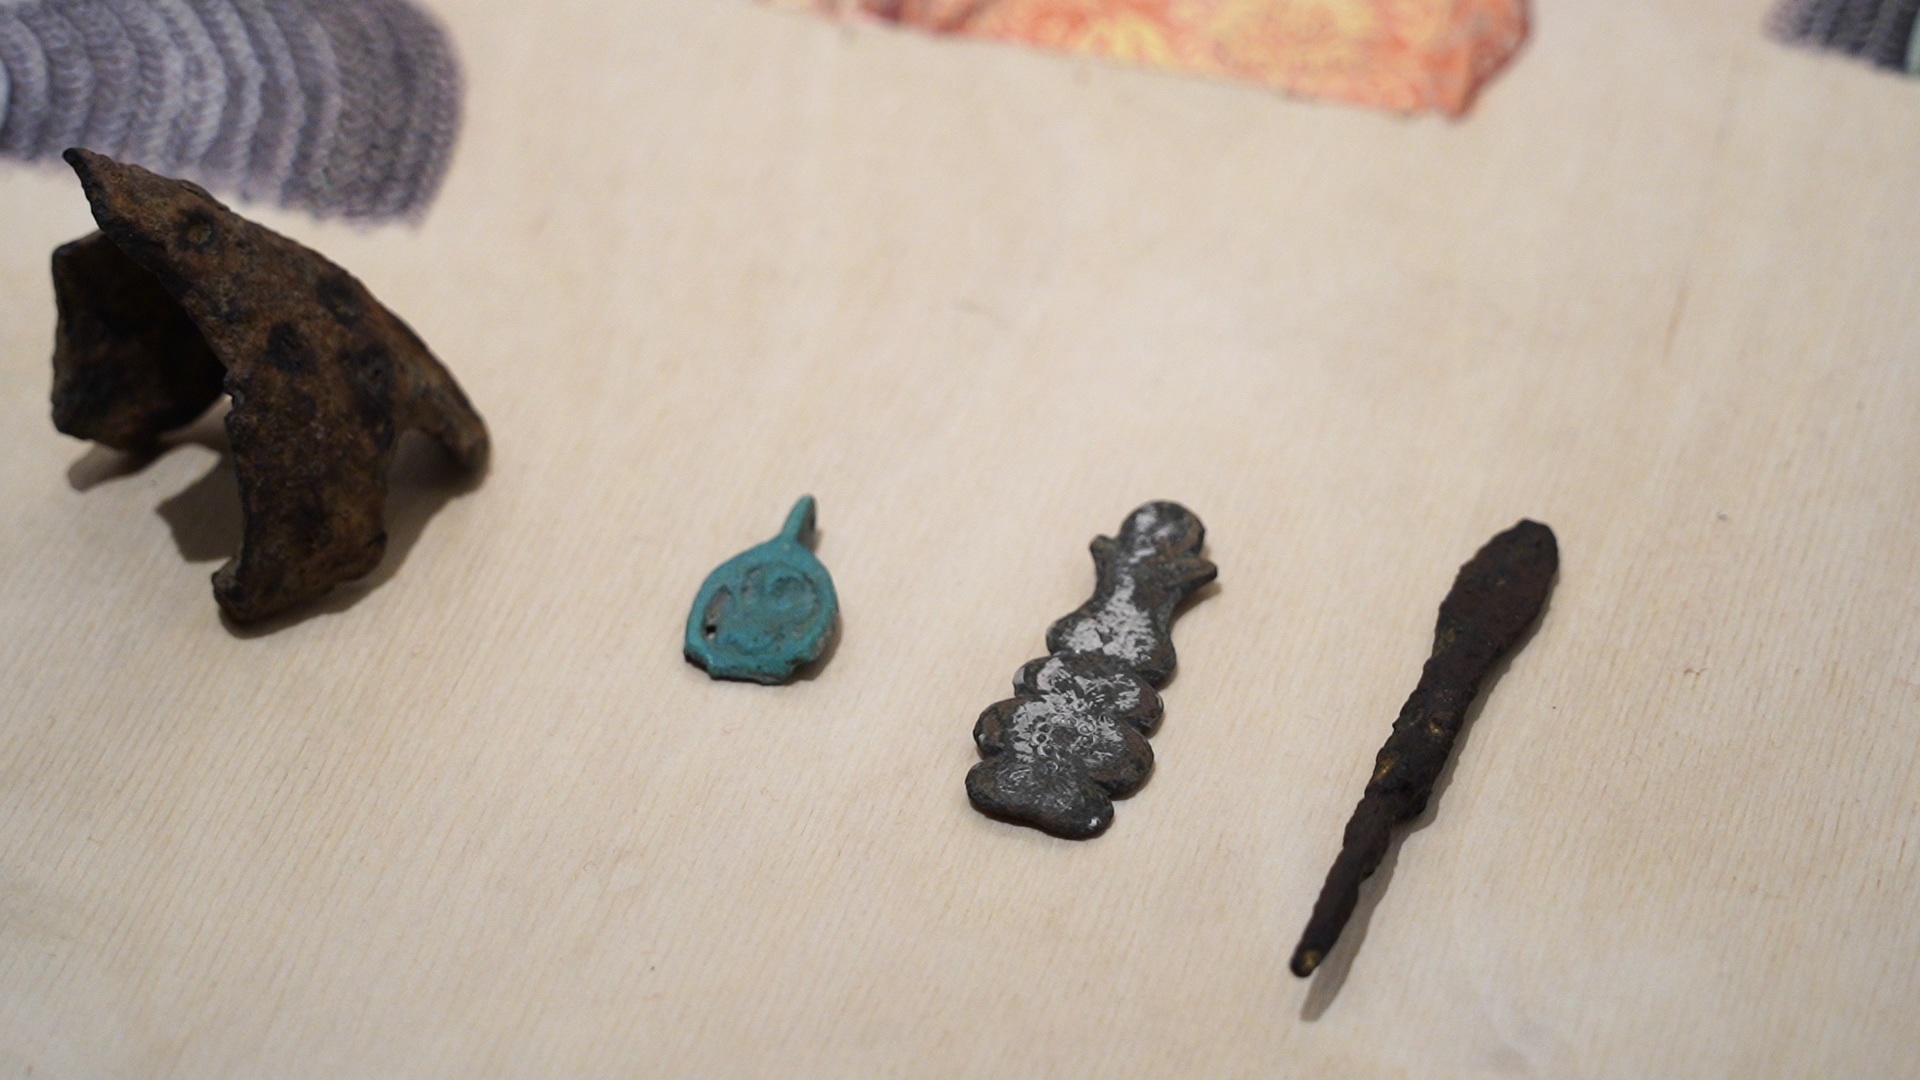 Археологи обнаружили недалеко от Куликова Поля уникальные артефакты 13-14 веков